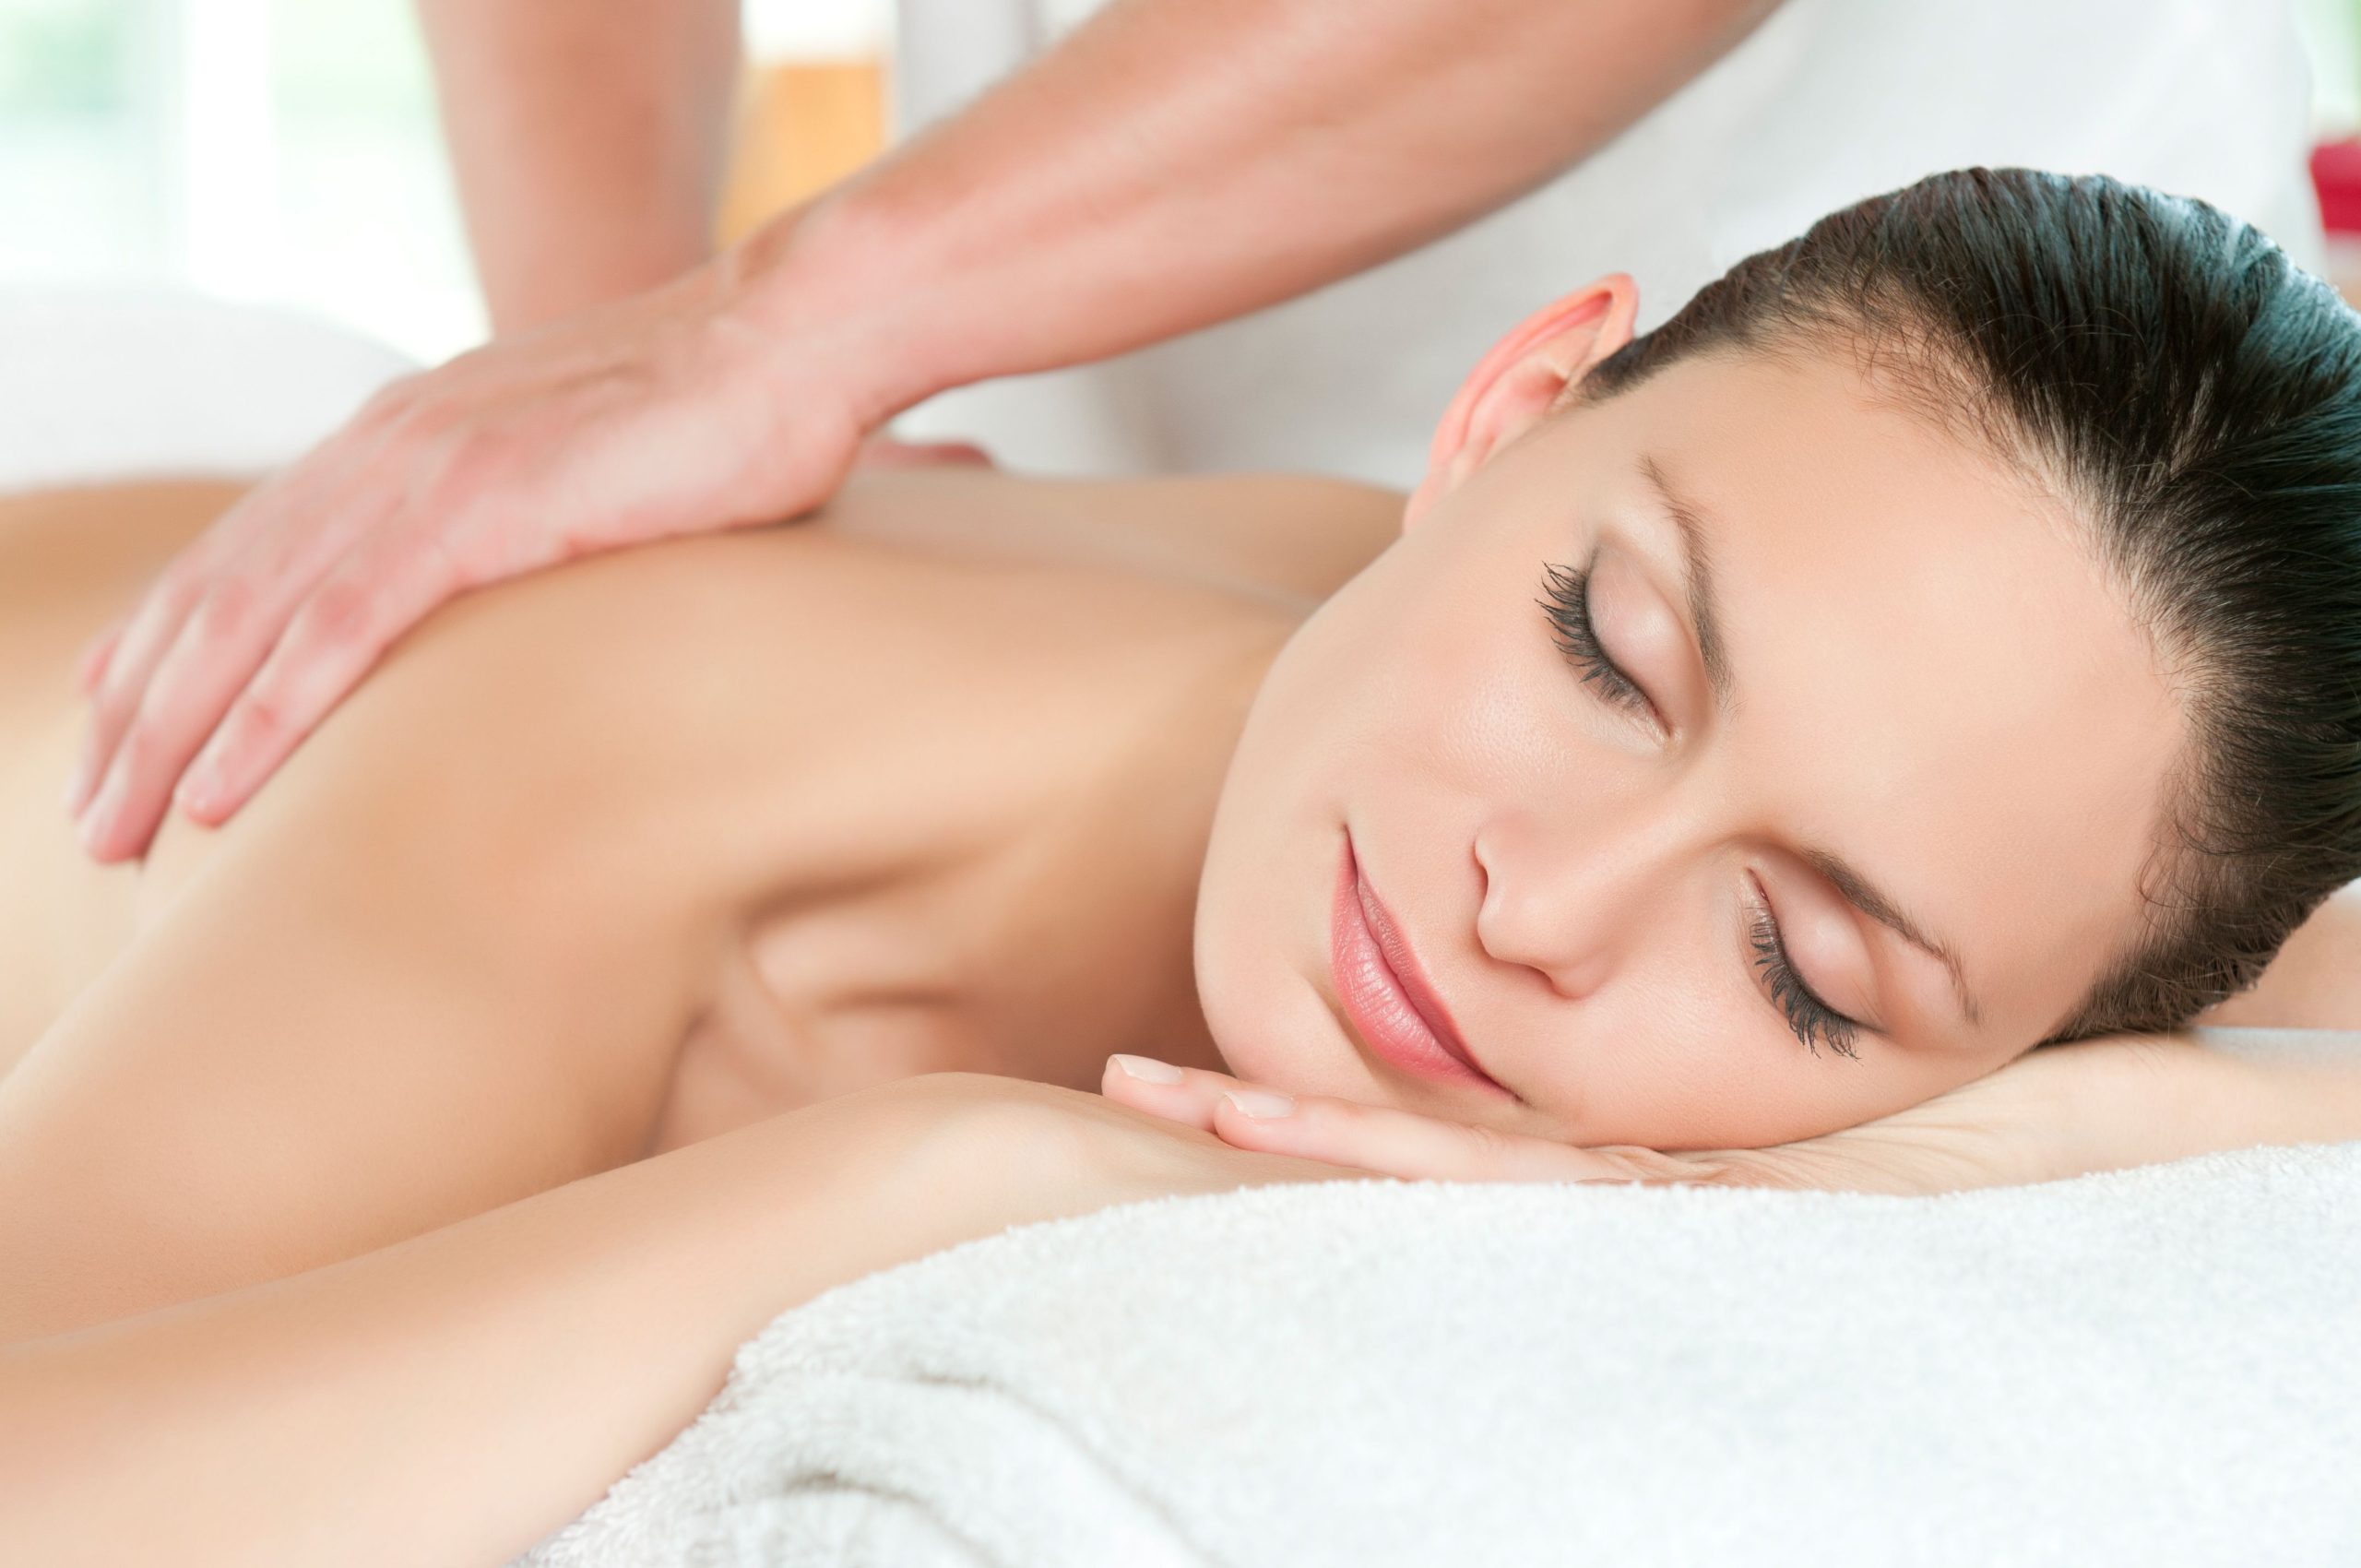 Relaxation Massage Therapist Near Everett, WA